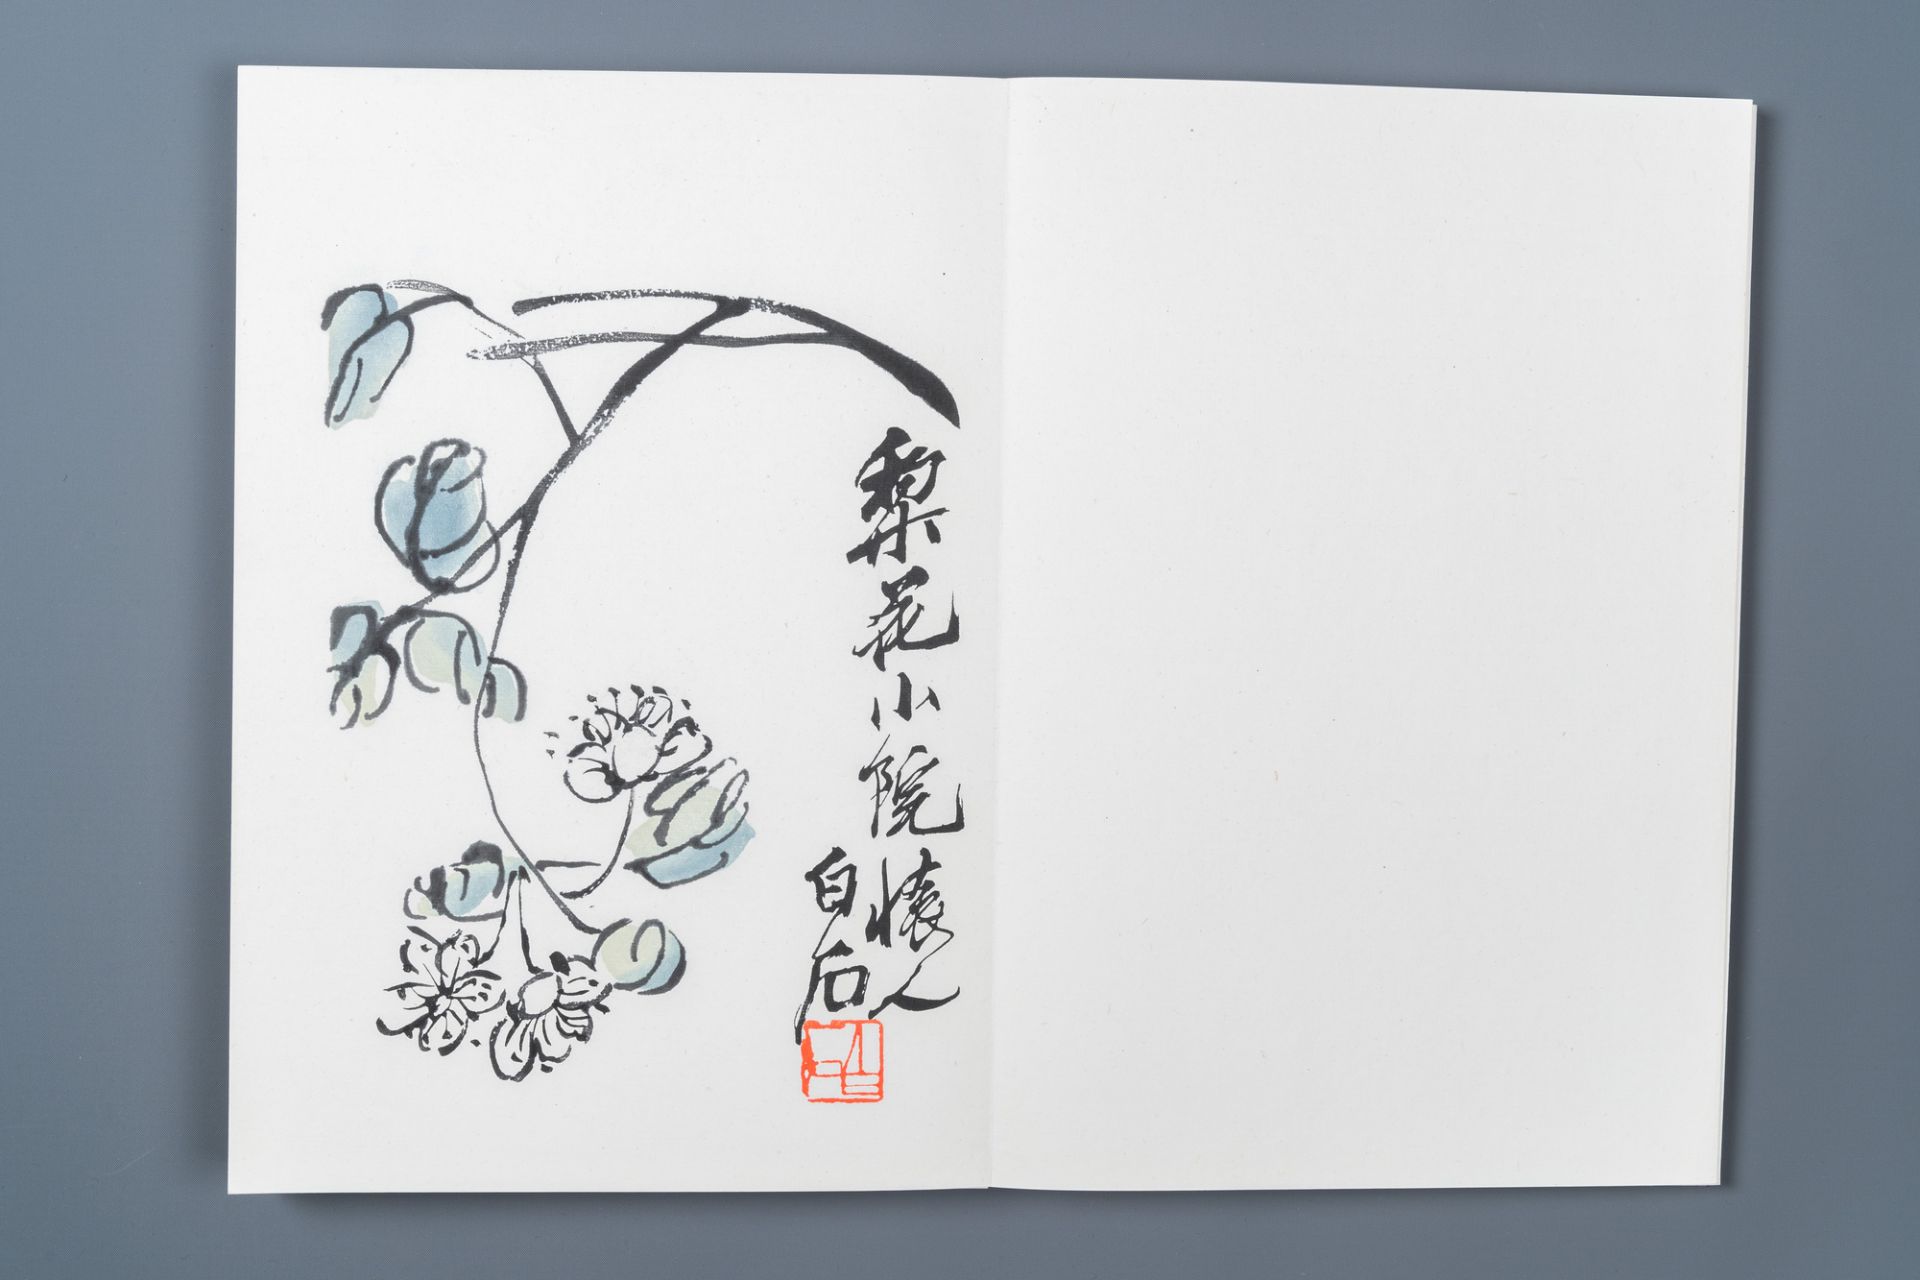 An album of 22 woodblocks after Qi Baishi, Rong Bao Zhai studio, Beijing, 1952 - Image 8 of 26